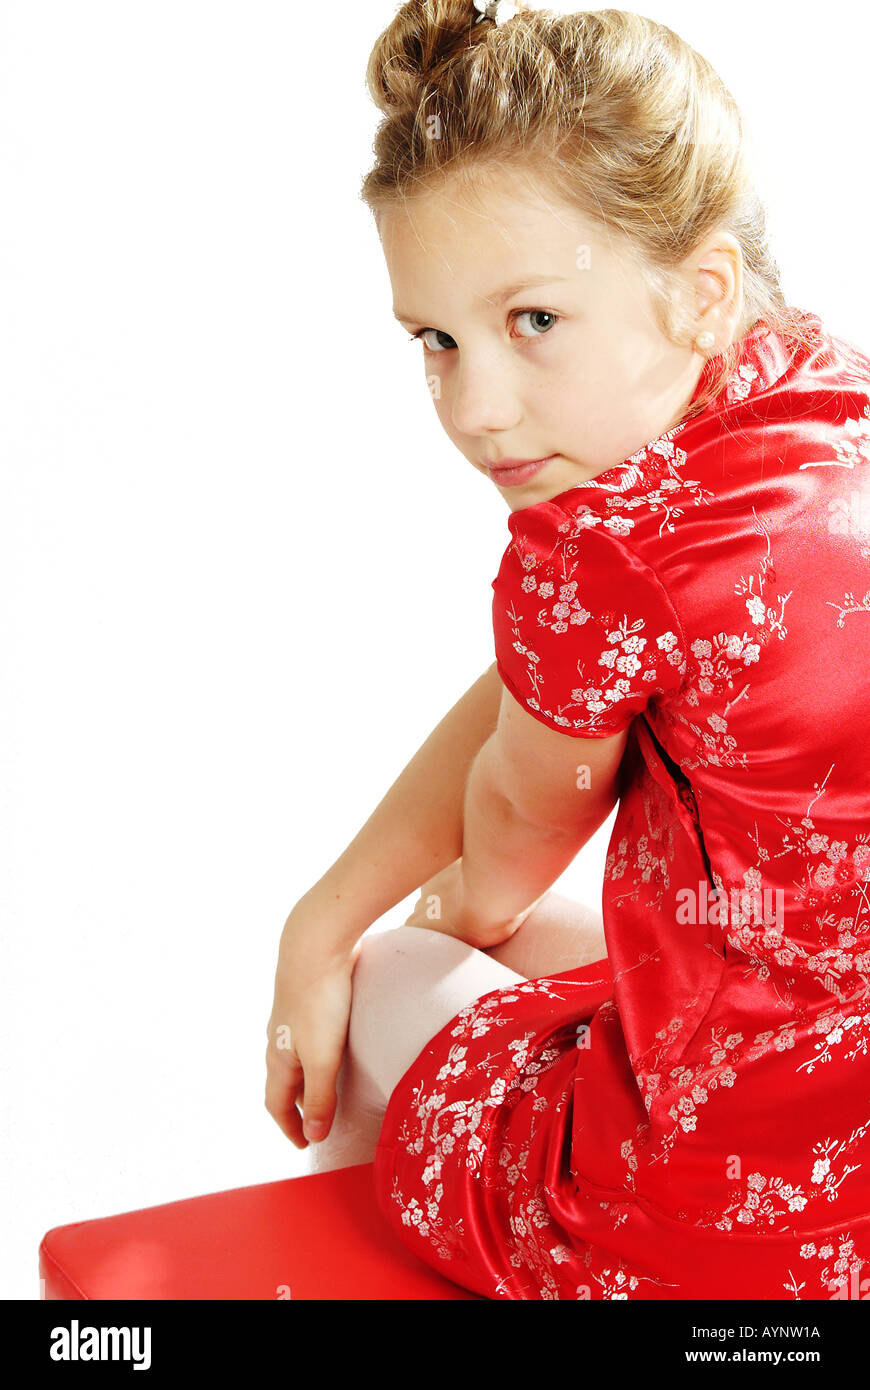 Zehnjaehriges Maedchen mit langen blonden Haaren und asiatischem Kleid Stock Photo